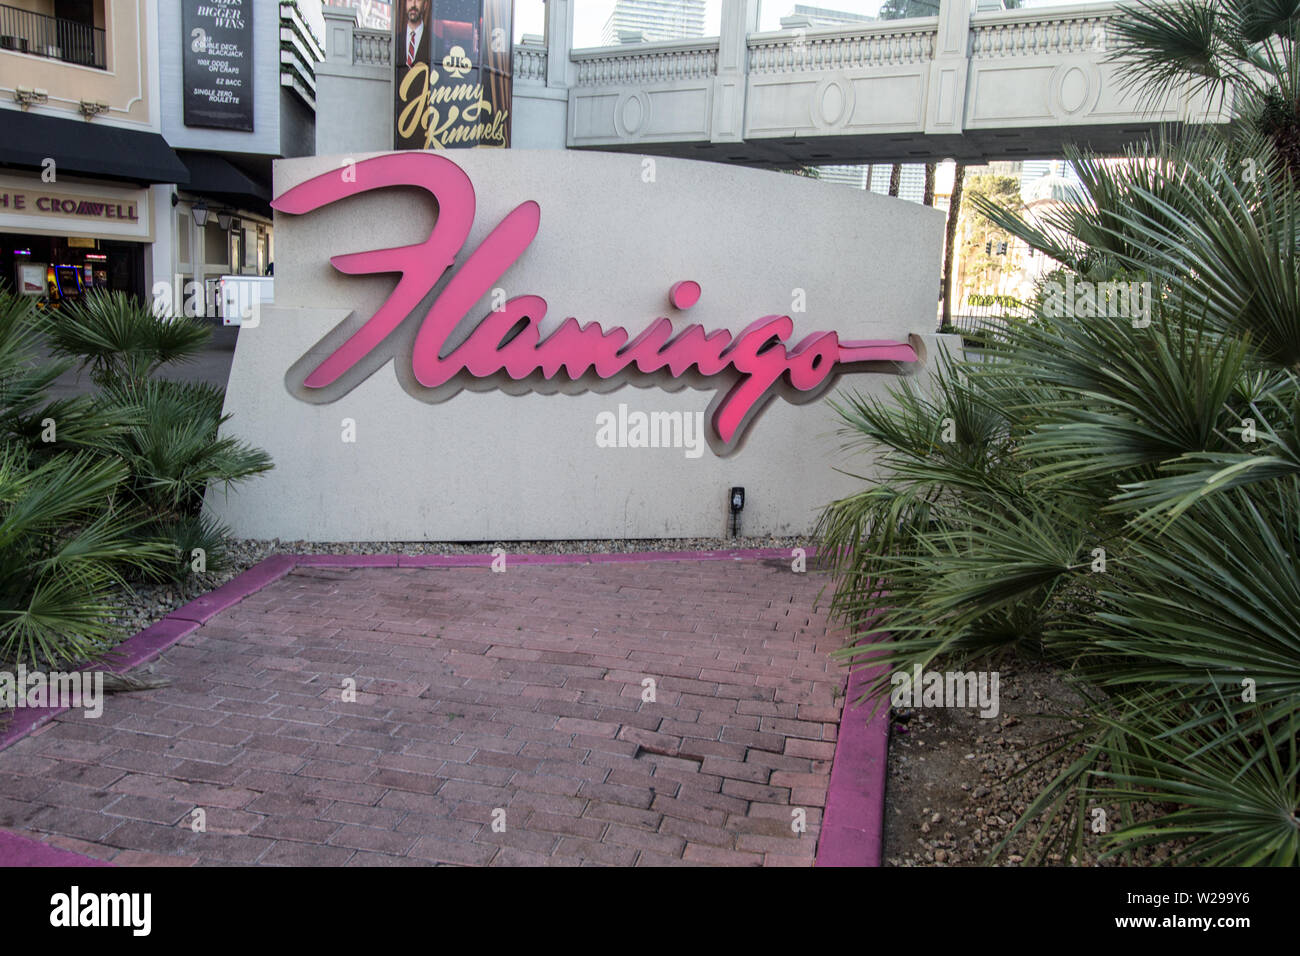 Las Vegas, Nevada, USA - May 6, 2019: Exterior of the Flamingo Casino and Resort on the Las Vegas Strip. Stock Photo